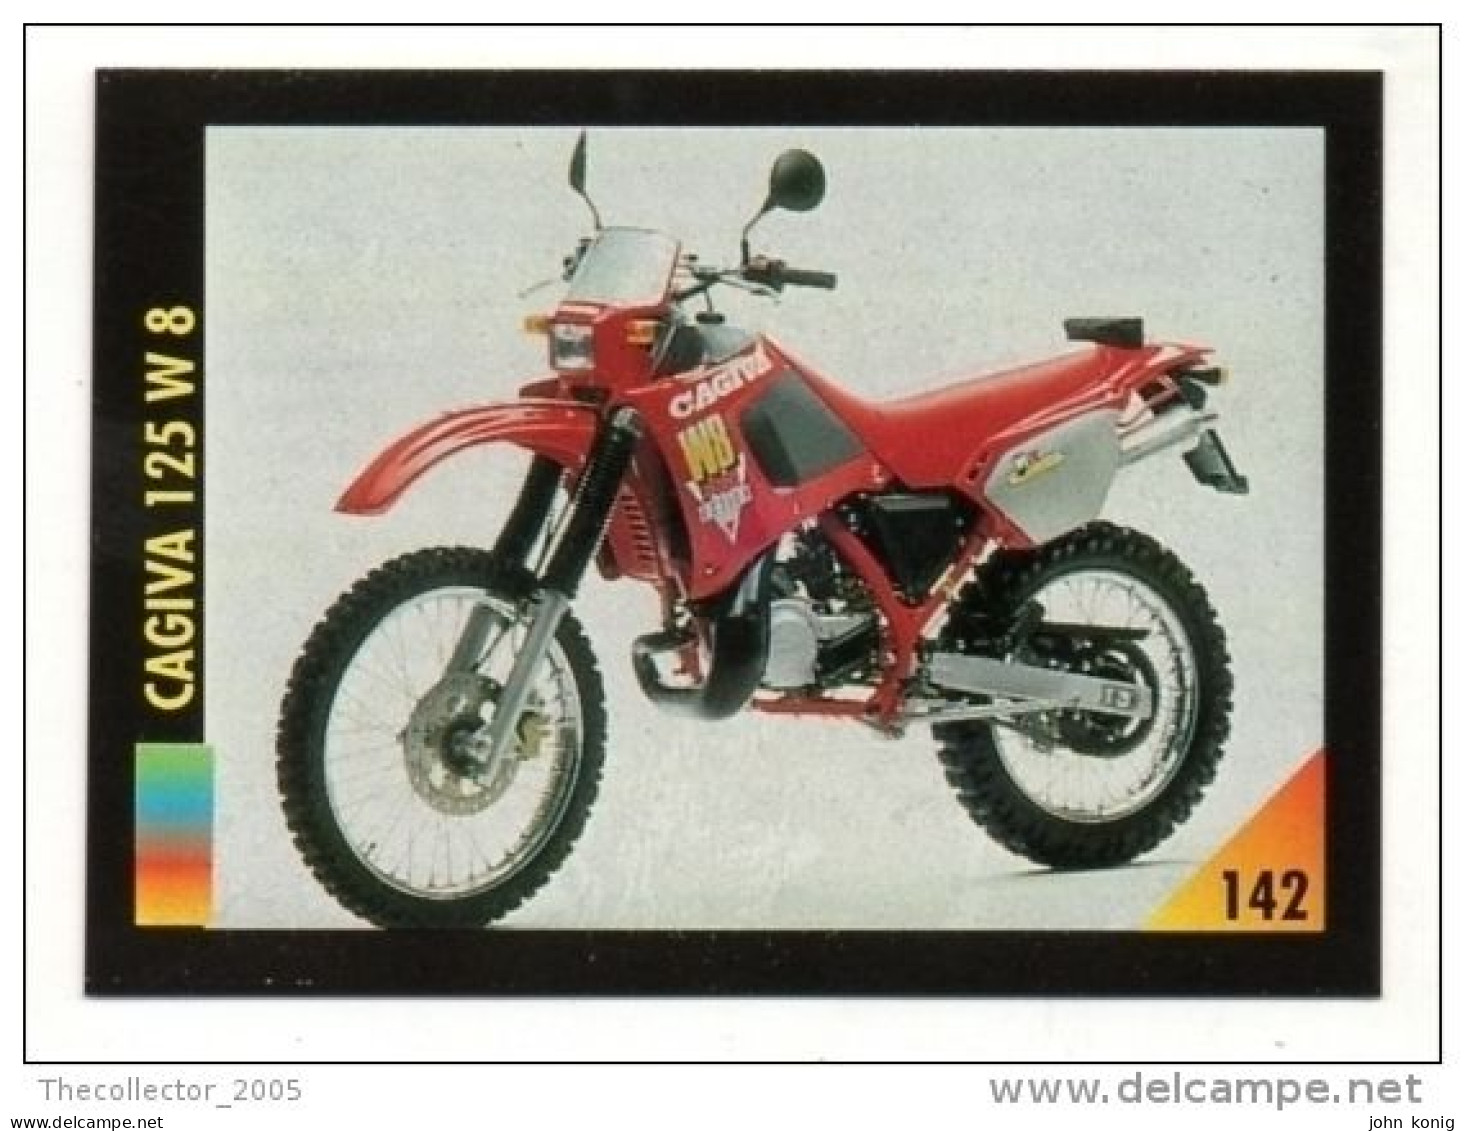 FIGURINA TRADING CARDS - LA MIA MOTO - MY MOTORBIKE - MASTERS EDIZIONI (1993) - CAGIVA 125 W 8 - Auto & Verkehr